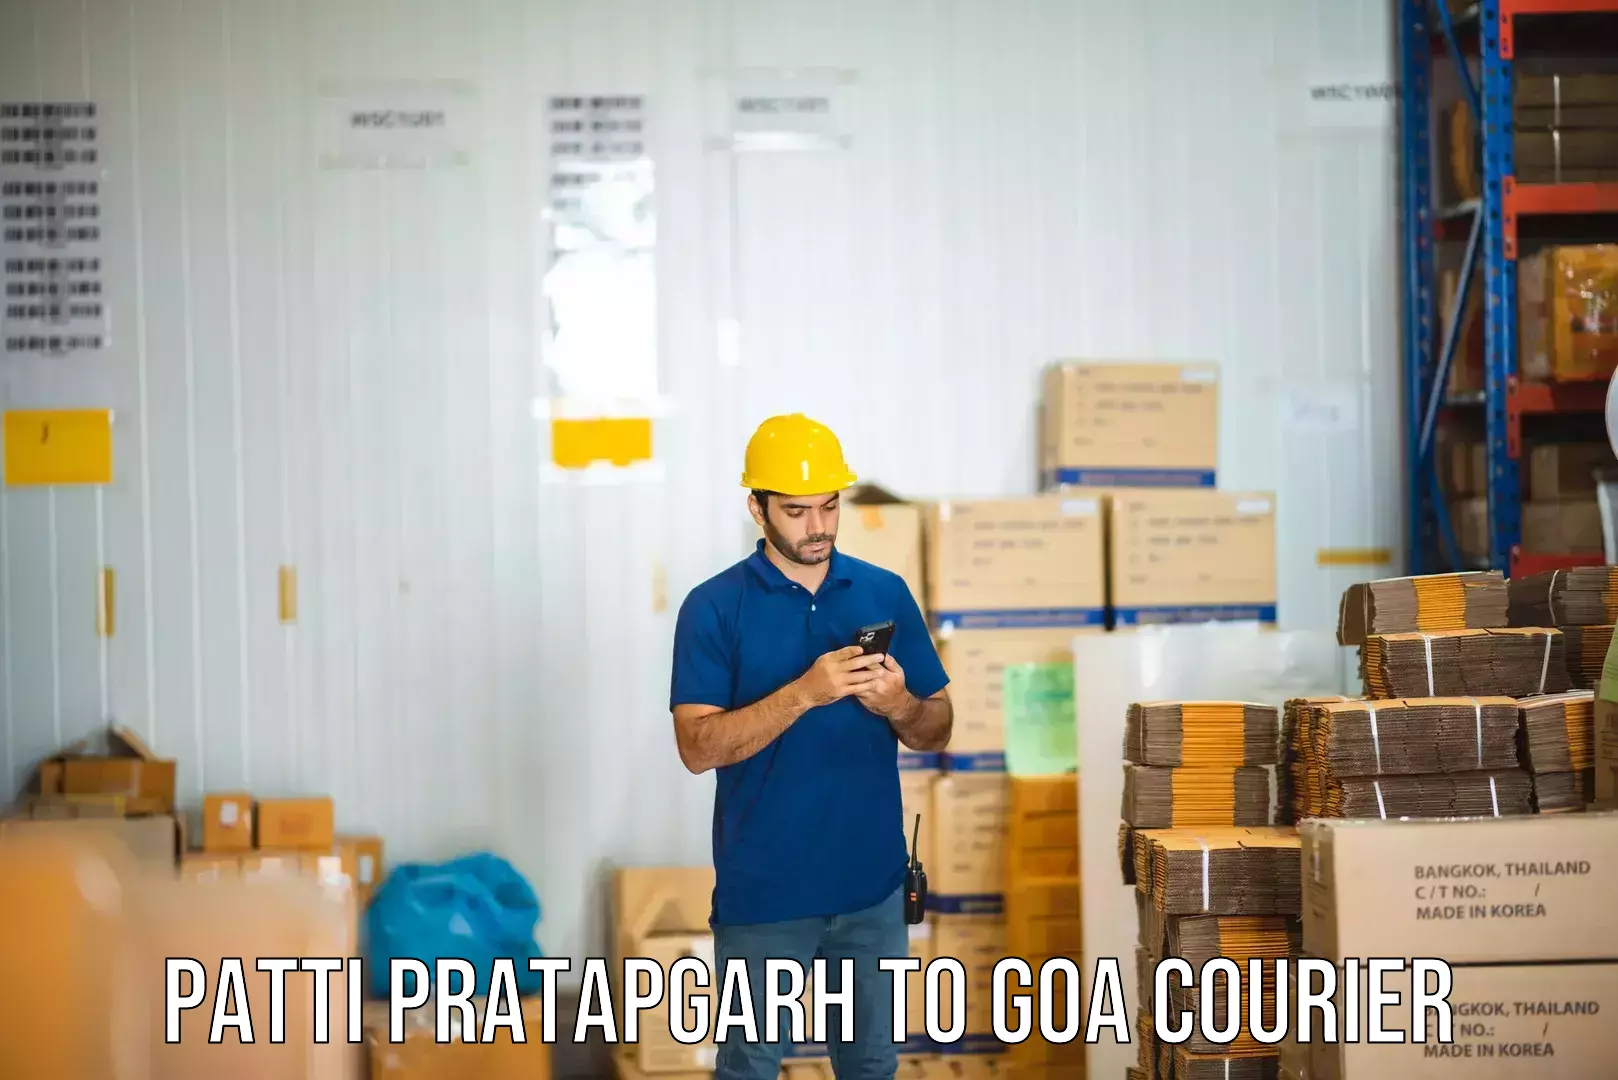 Sustainable shipping practices Patti Pratapgarh to Goa